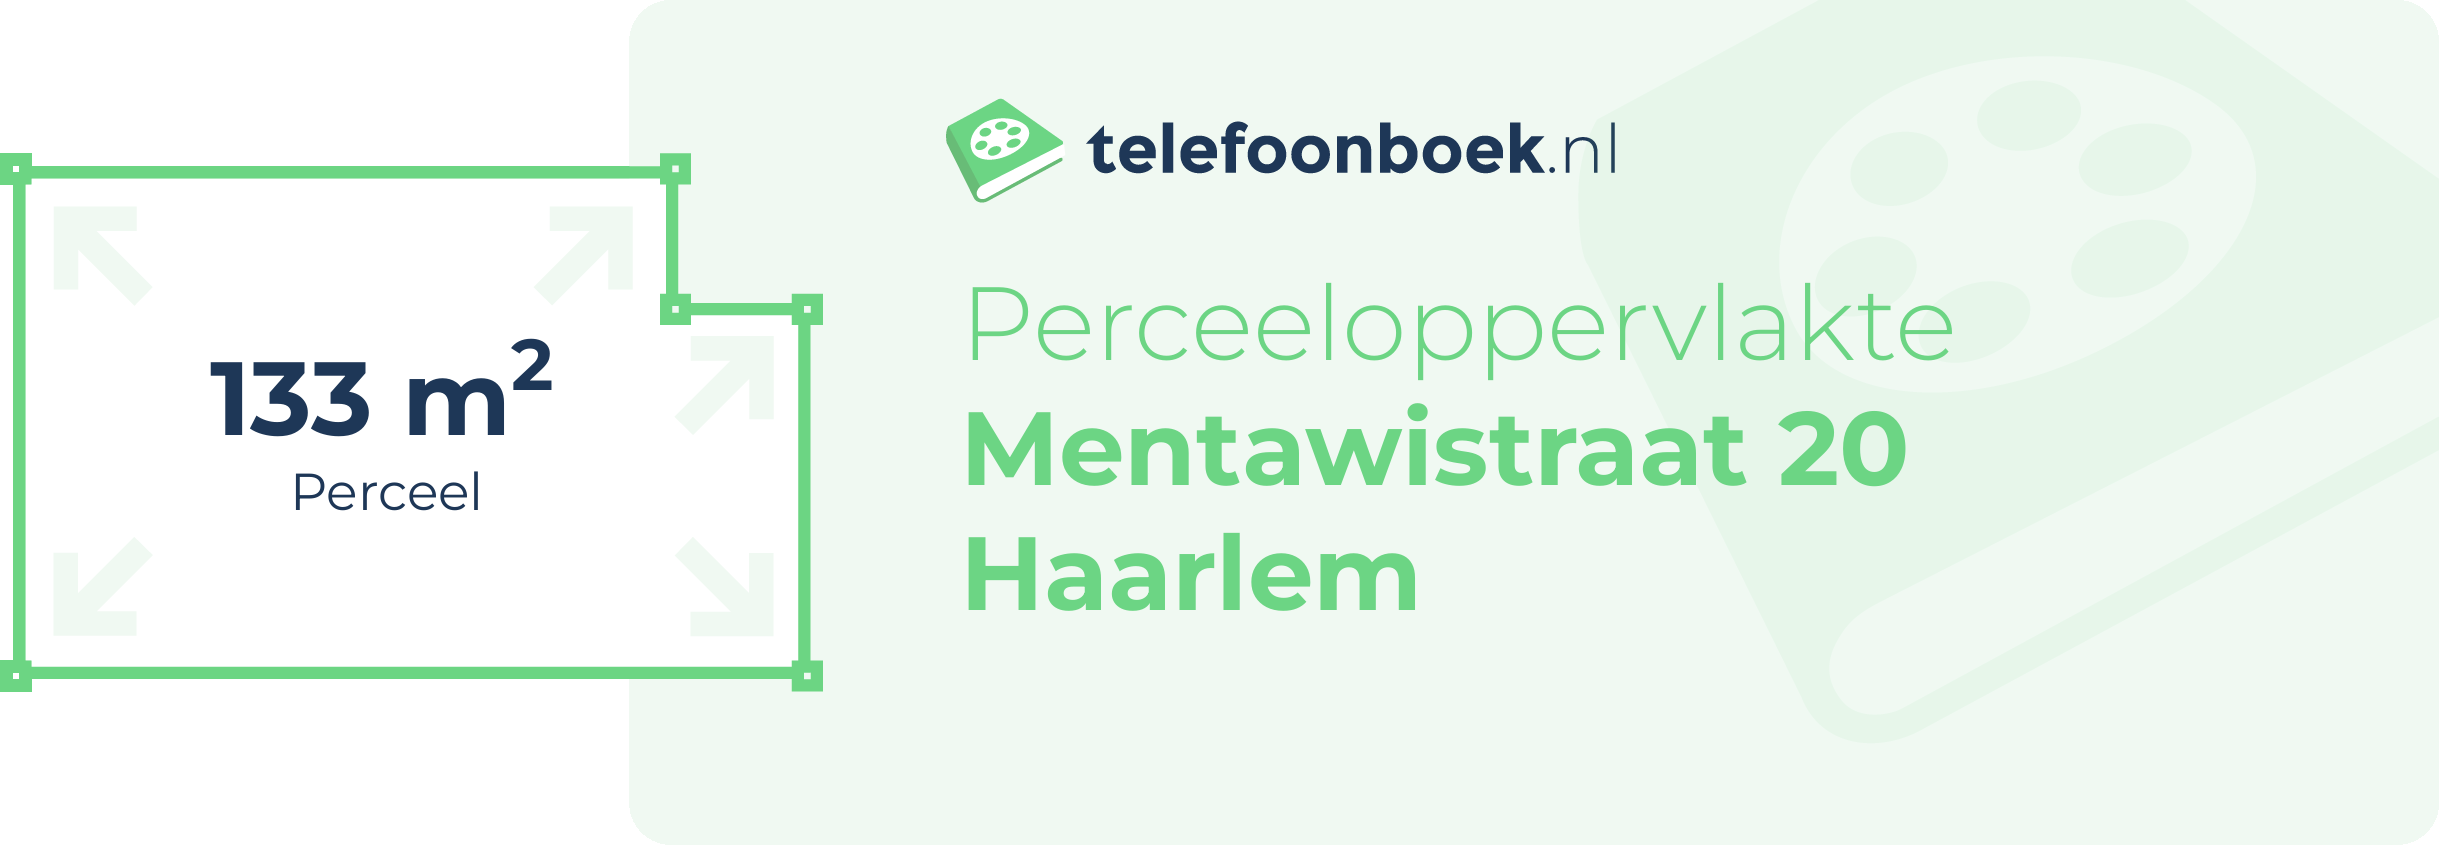 Perceeloppervlakte Mentawistraat 20 Haarlem